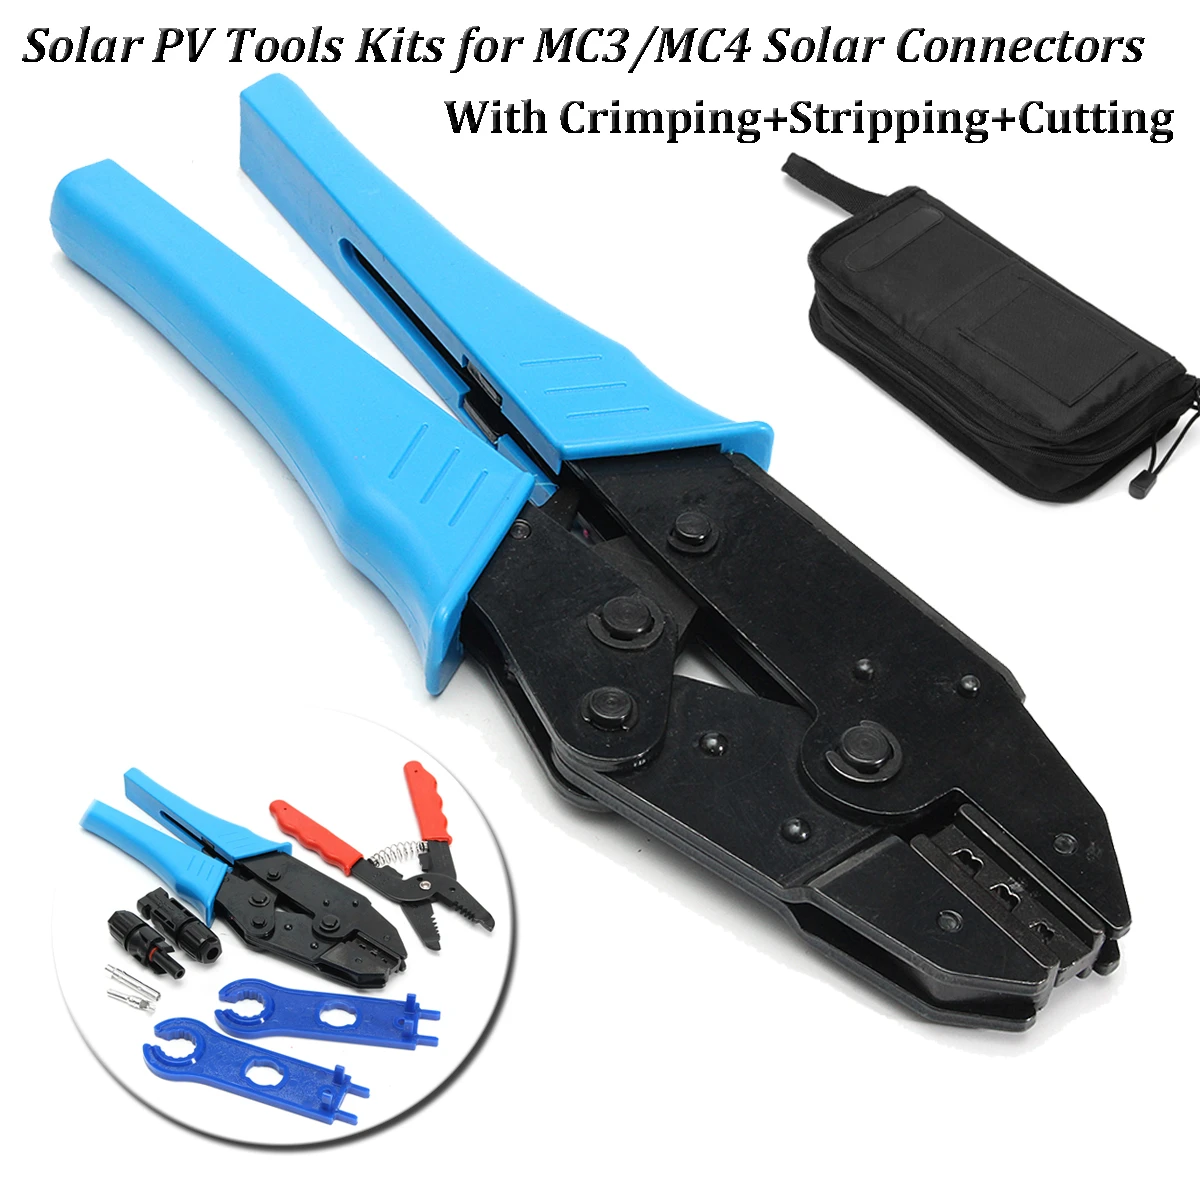 MC3/MC4 Güneş Konnektörleri için Güneş Enerjisi Aletleri Kitleri Sıkma Sıyırma Kesme ile